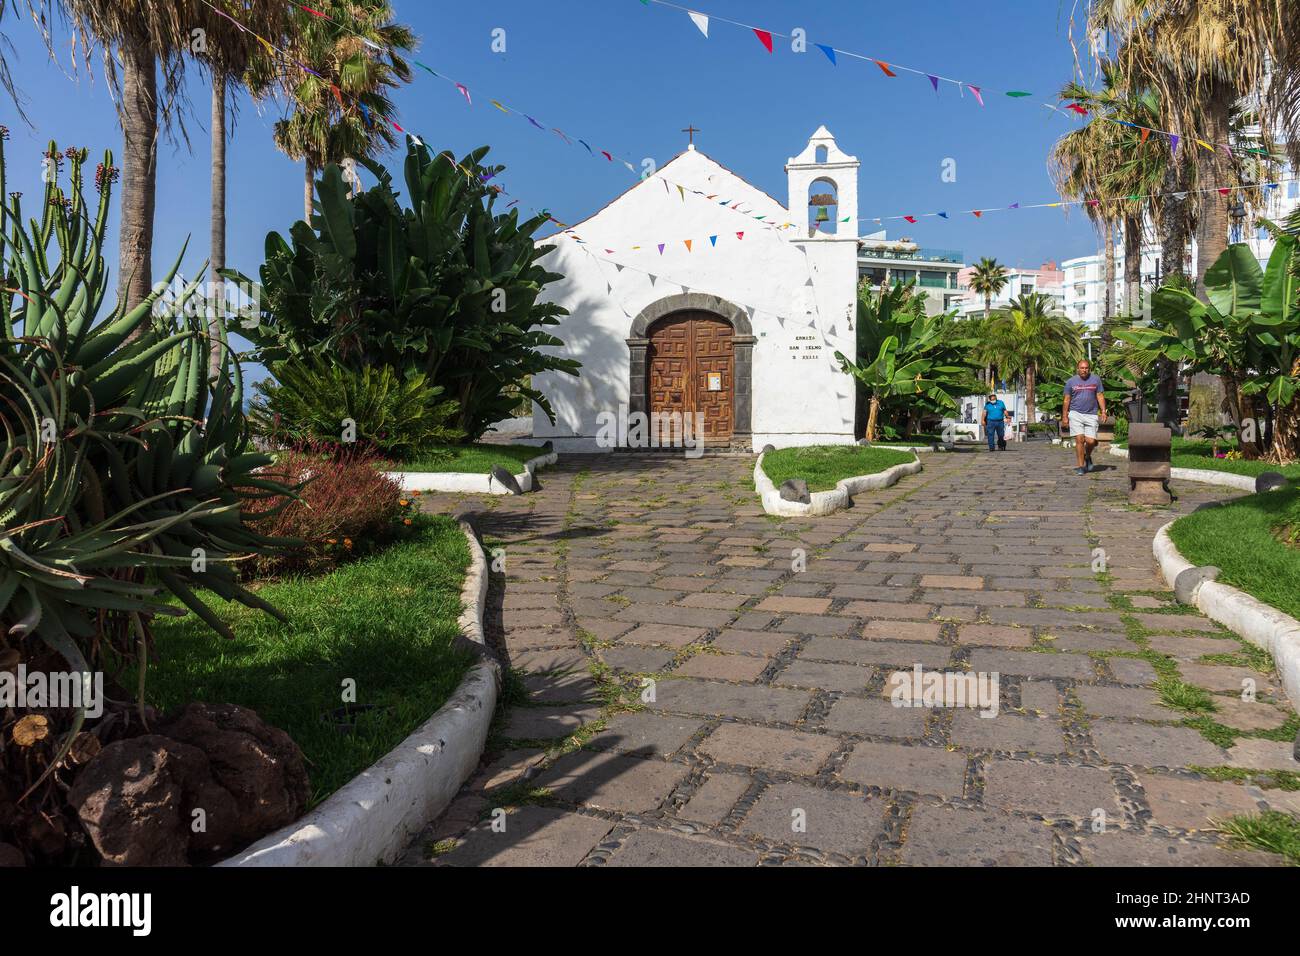 PUERTO DE LA CRUZ, TENERIFFA, SPANIEN - 14. JULI 2021: Die Kapelle (Ermita) San Telmo steht auf einem felsigen Bergrücken am östlichen Ende der Bucht von San Telmo auf Teneriffa. Stockfoto